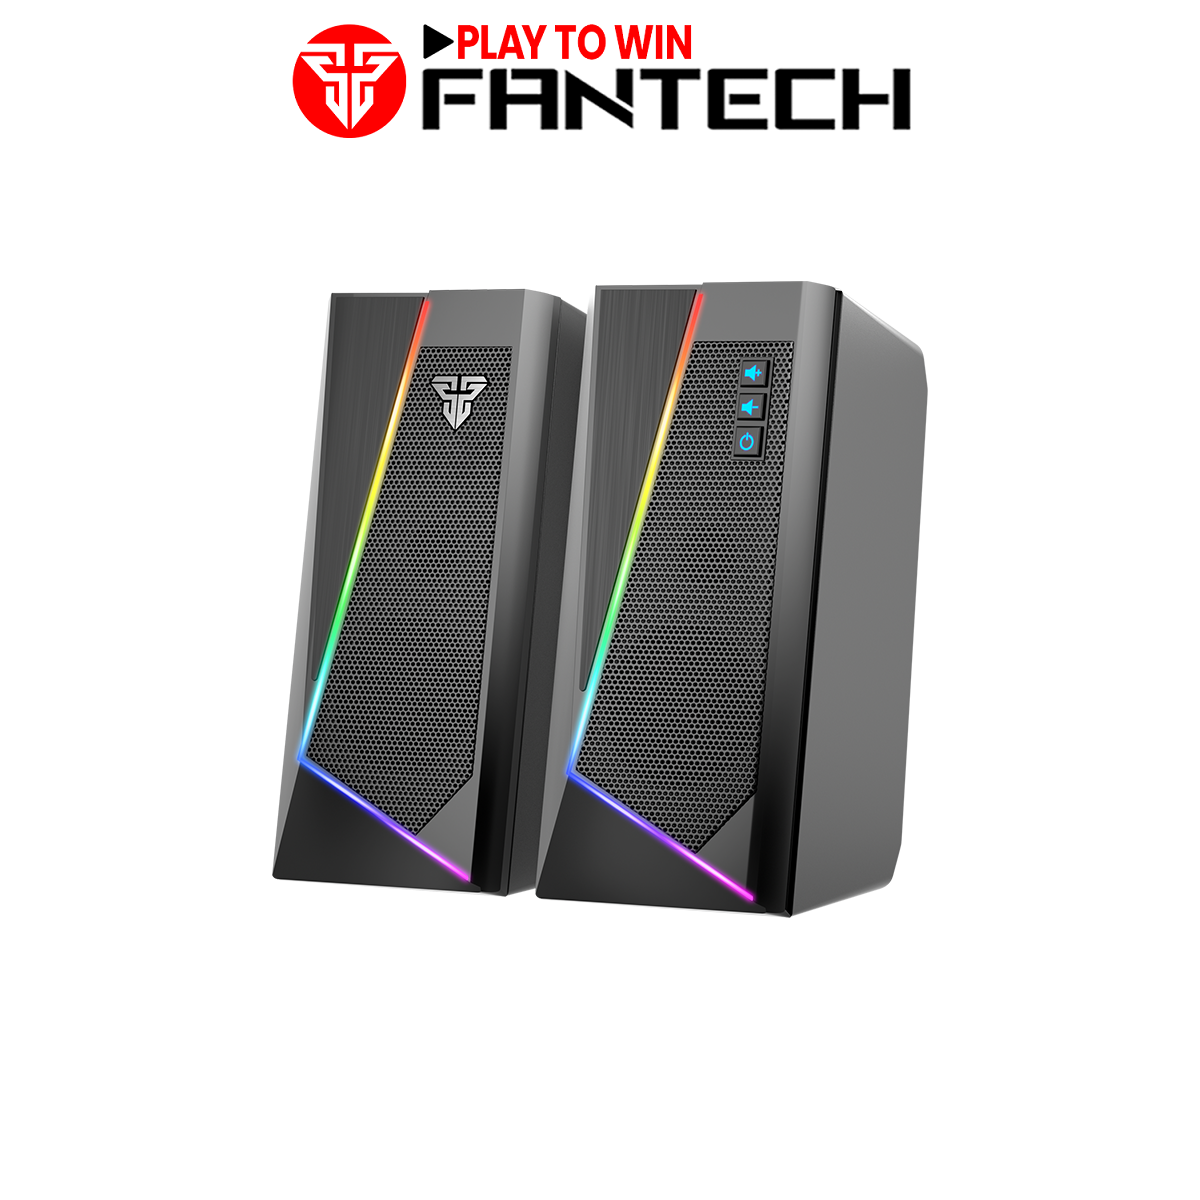 Loa Vi TÍnh Gaming Fantech GS204 RUMBLE LED RGB 7 Chế Độ Hỗ Trợ Kết Nối Bluetooth 5.0 Và AUX 3.5mm – Hãng Phân Phối Chính Thức